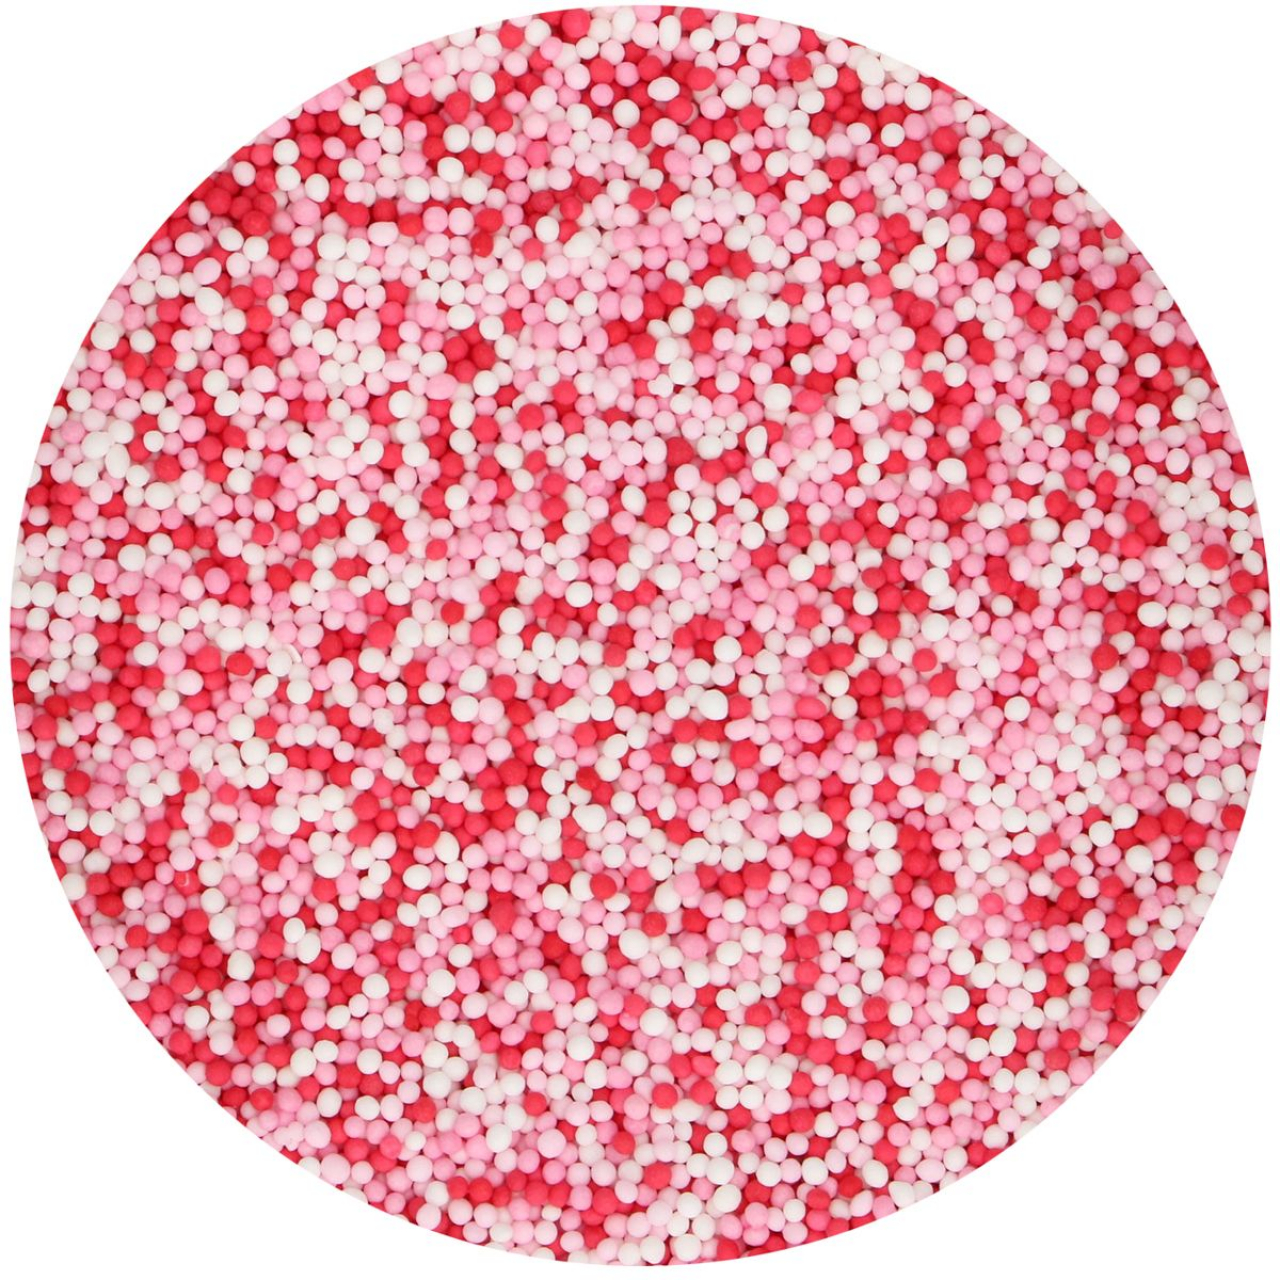 FunCakes Nonpareilles mix - piros, fehér, rózsaszín - 80g